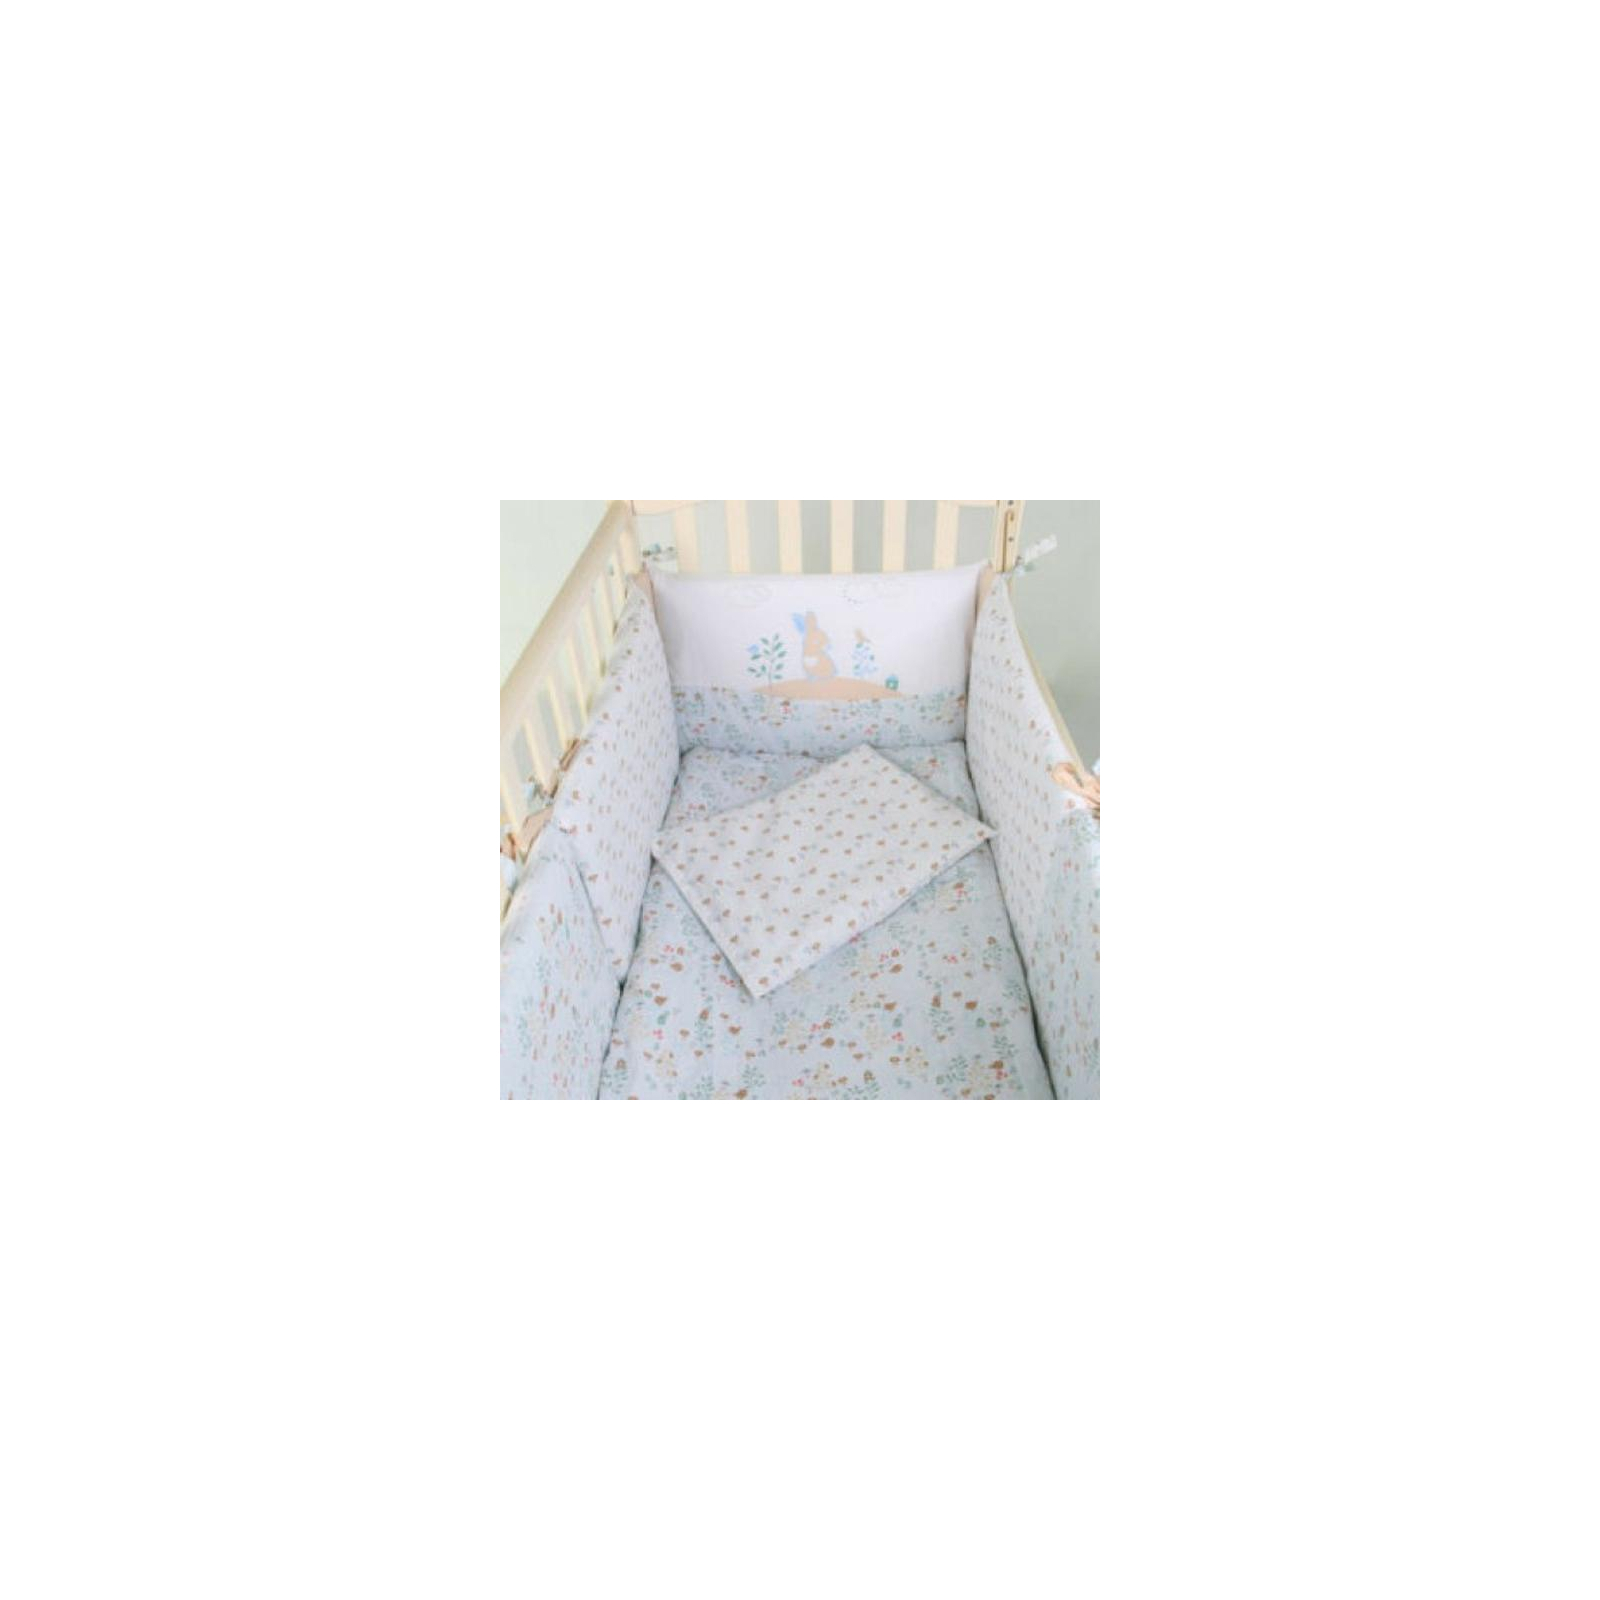 Детский постельный набор Верес Pin pin blue 6 ед. (220.14) изображение 2